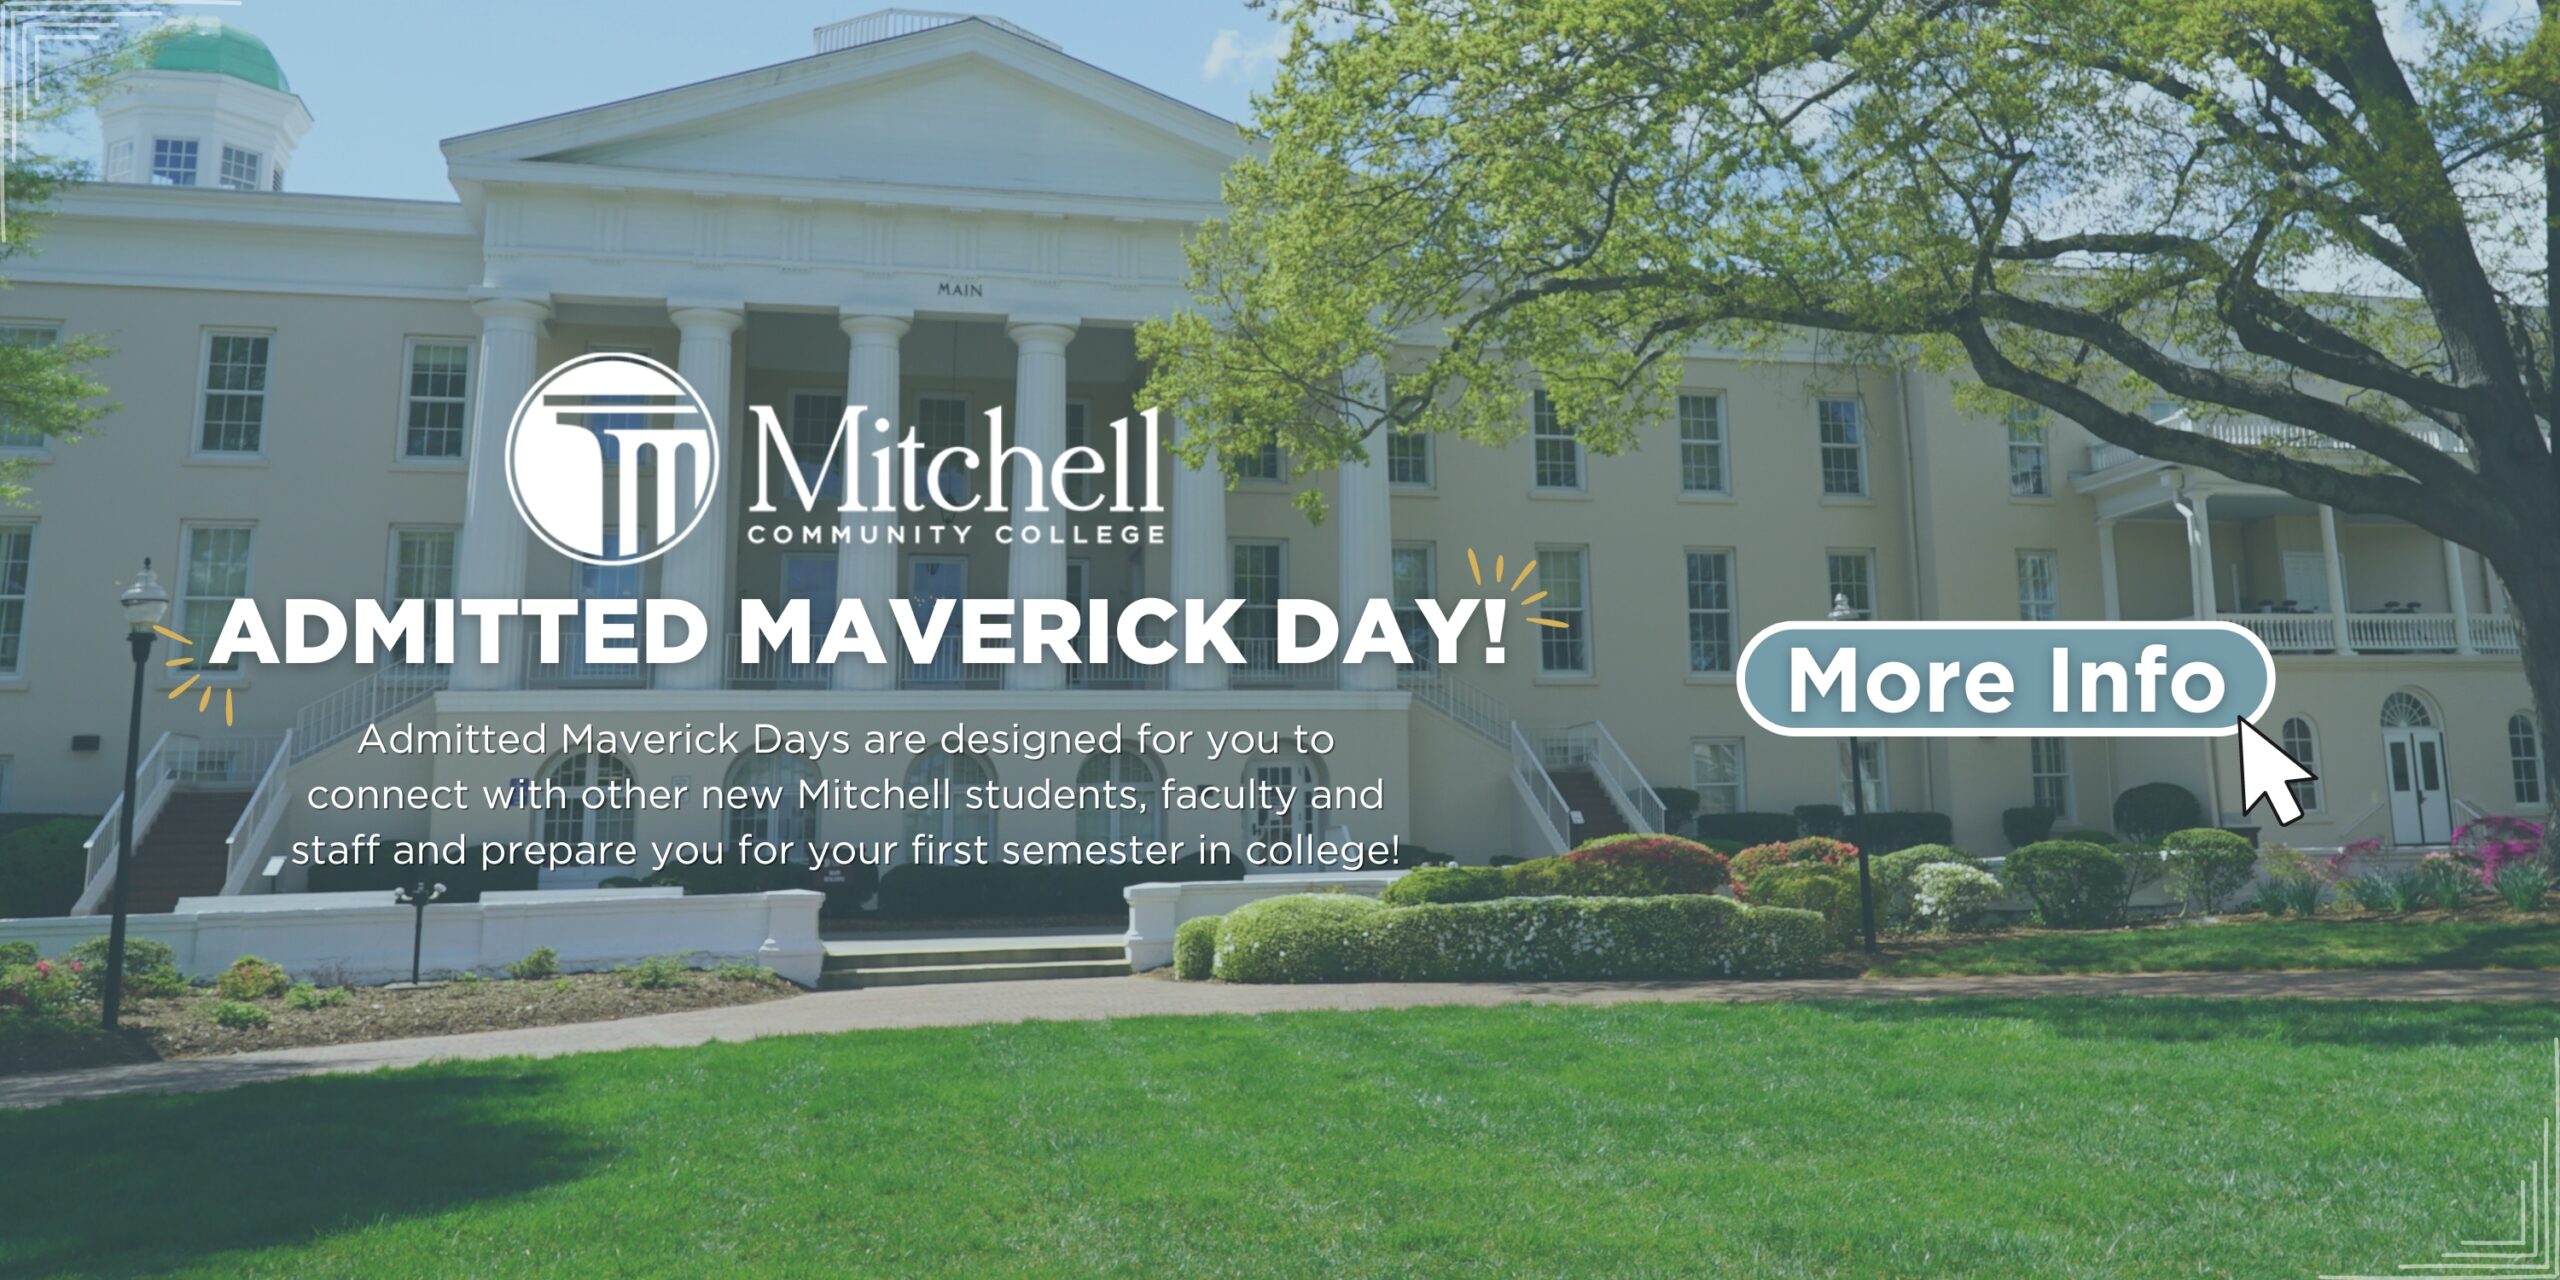 ¡Haga clic en este banner para obtener más información sobre el Día de los Mavericks Admitidos!